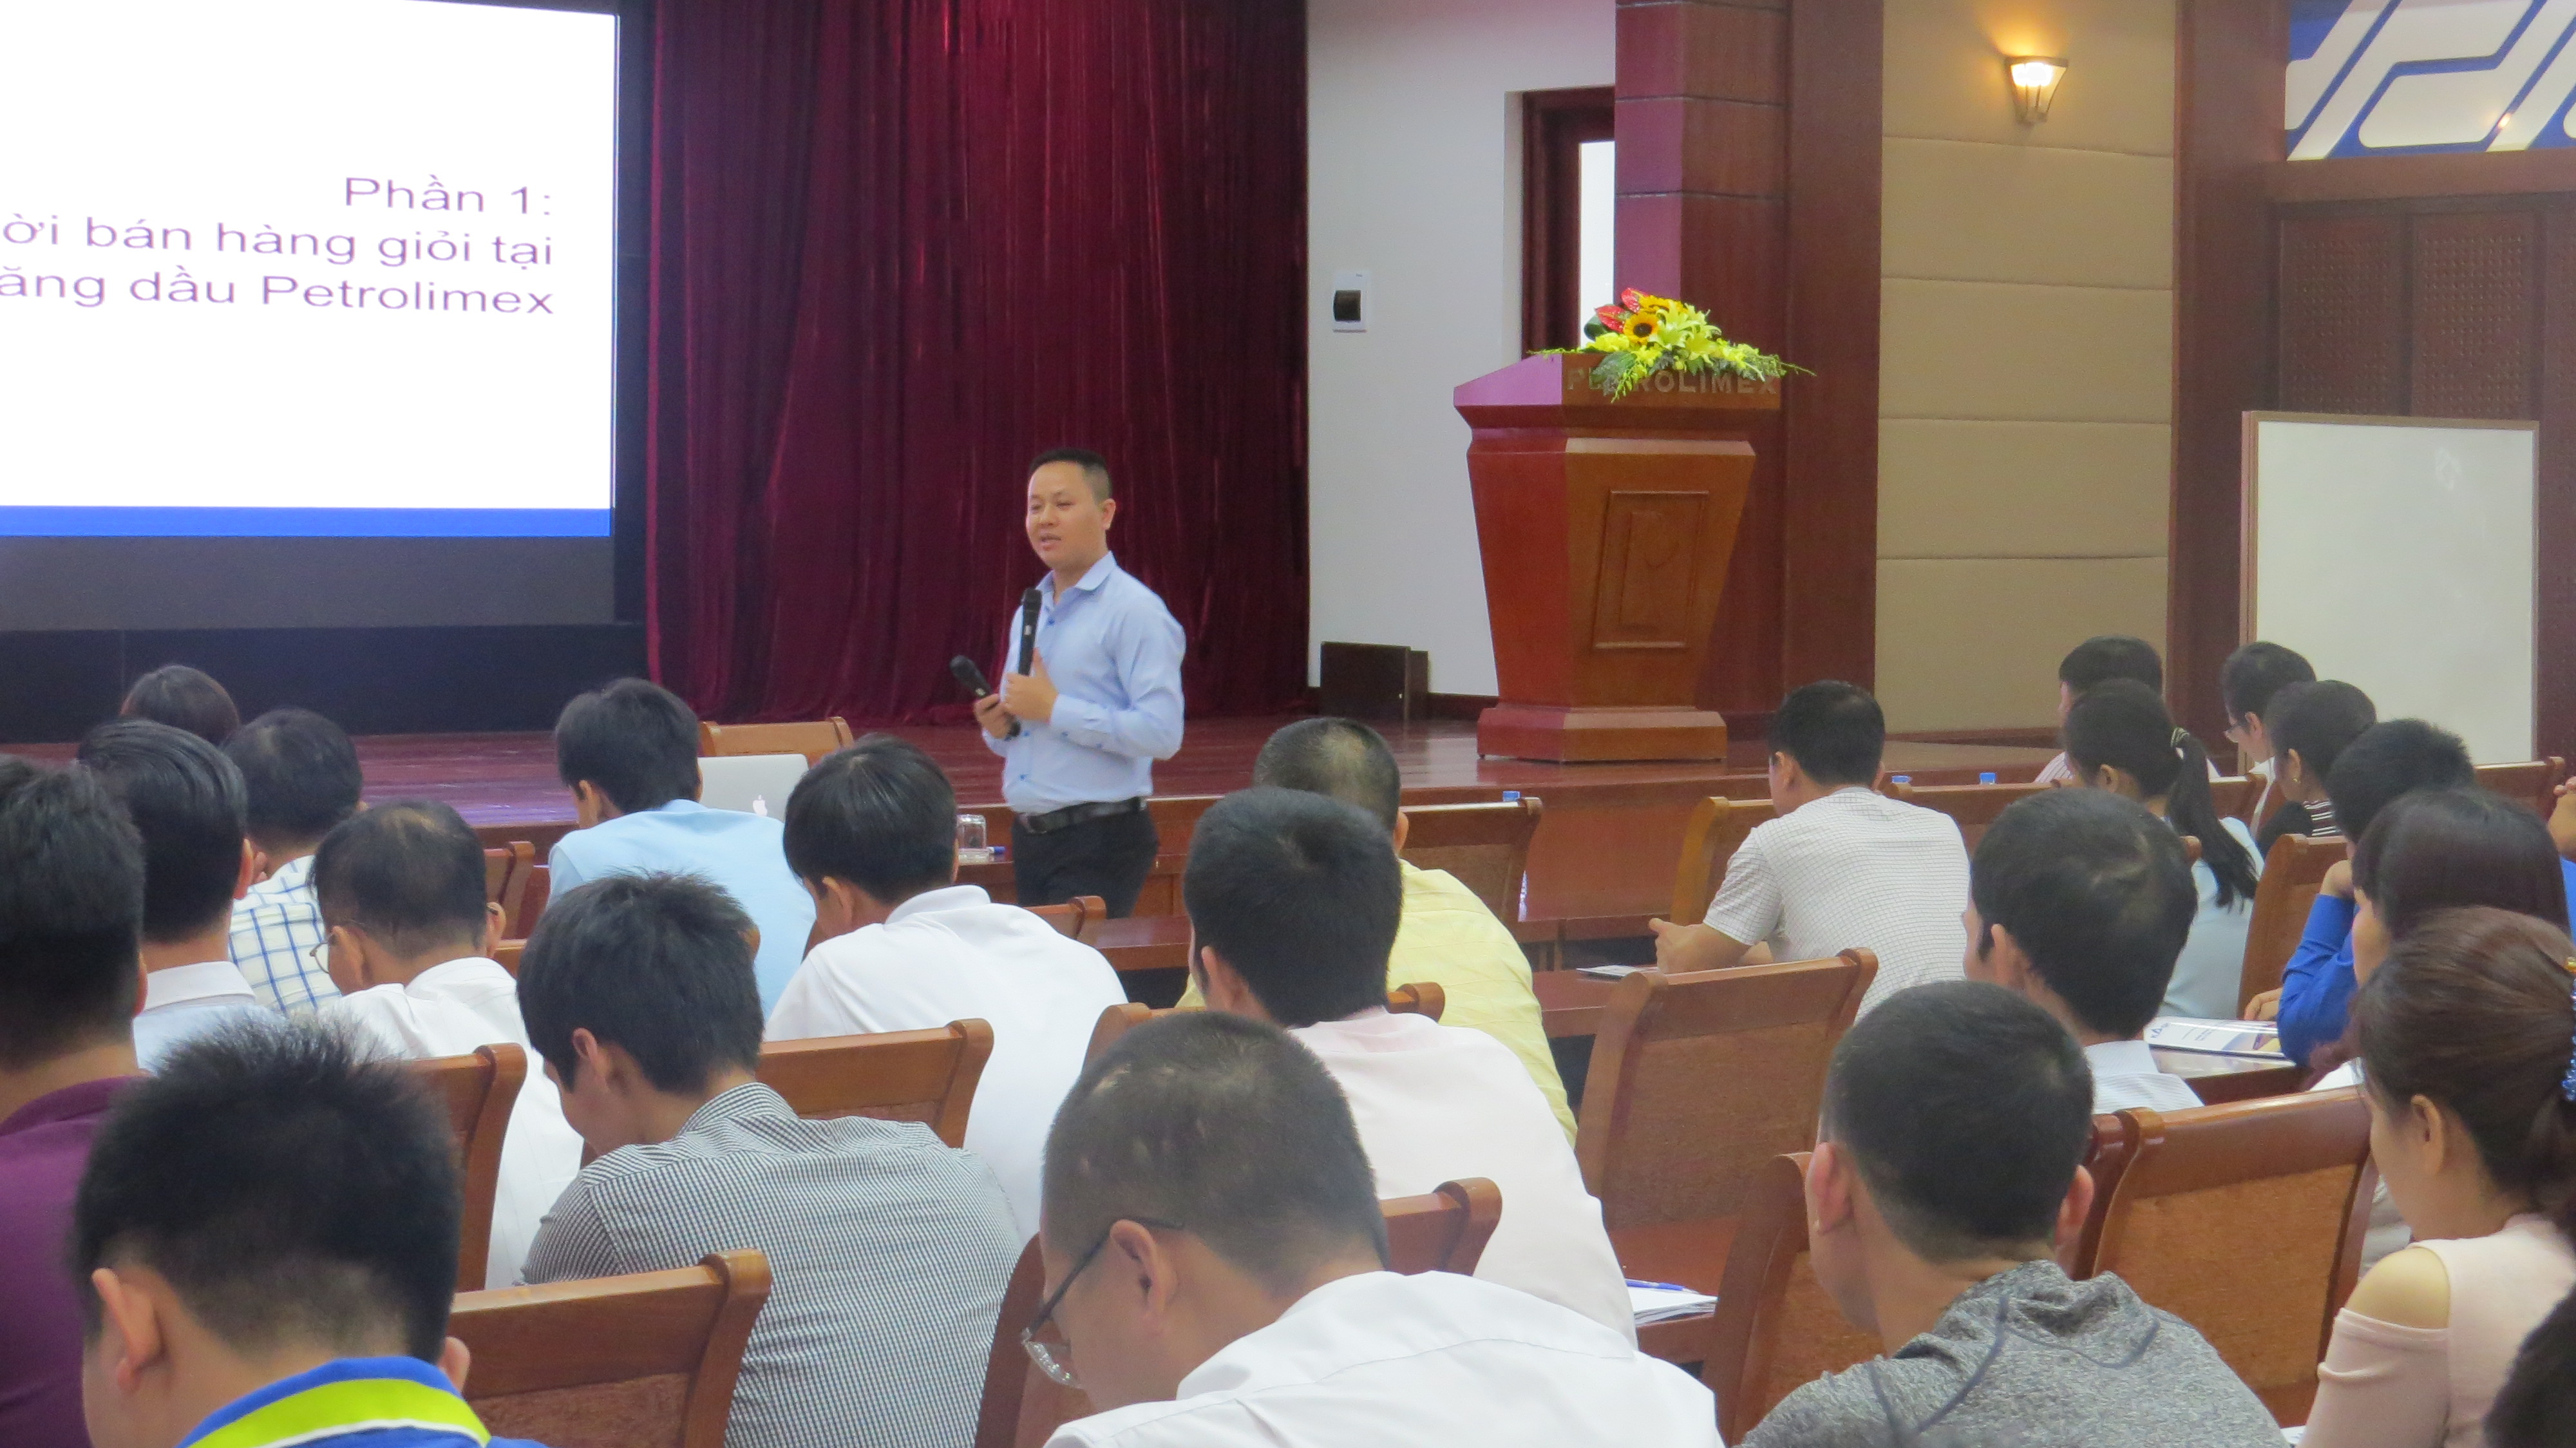 Ông Nguyễn Bá Cự - giảng viên chính khóa học "Văn minh thương mại và Phương thức 5S trong Cửa hàng xăng dầu Petrolimex"